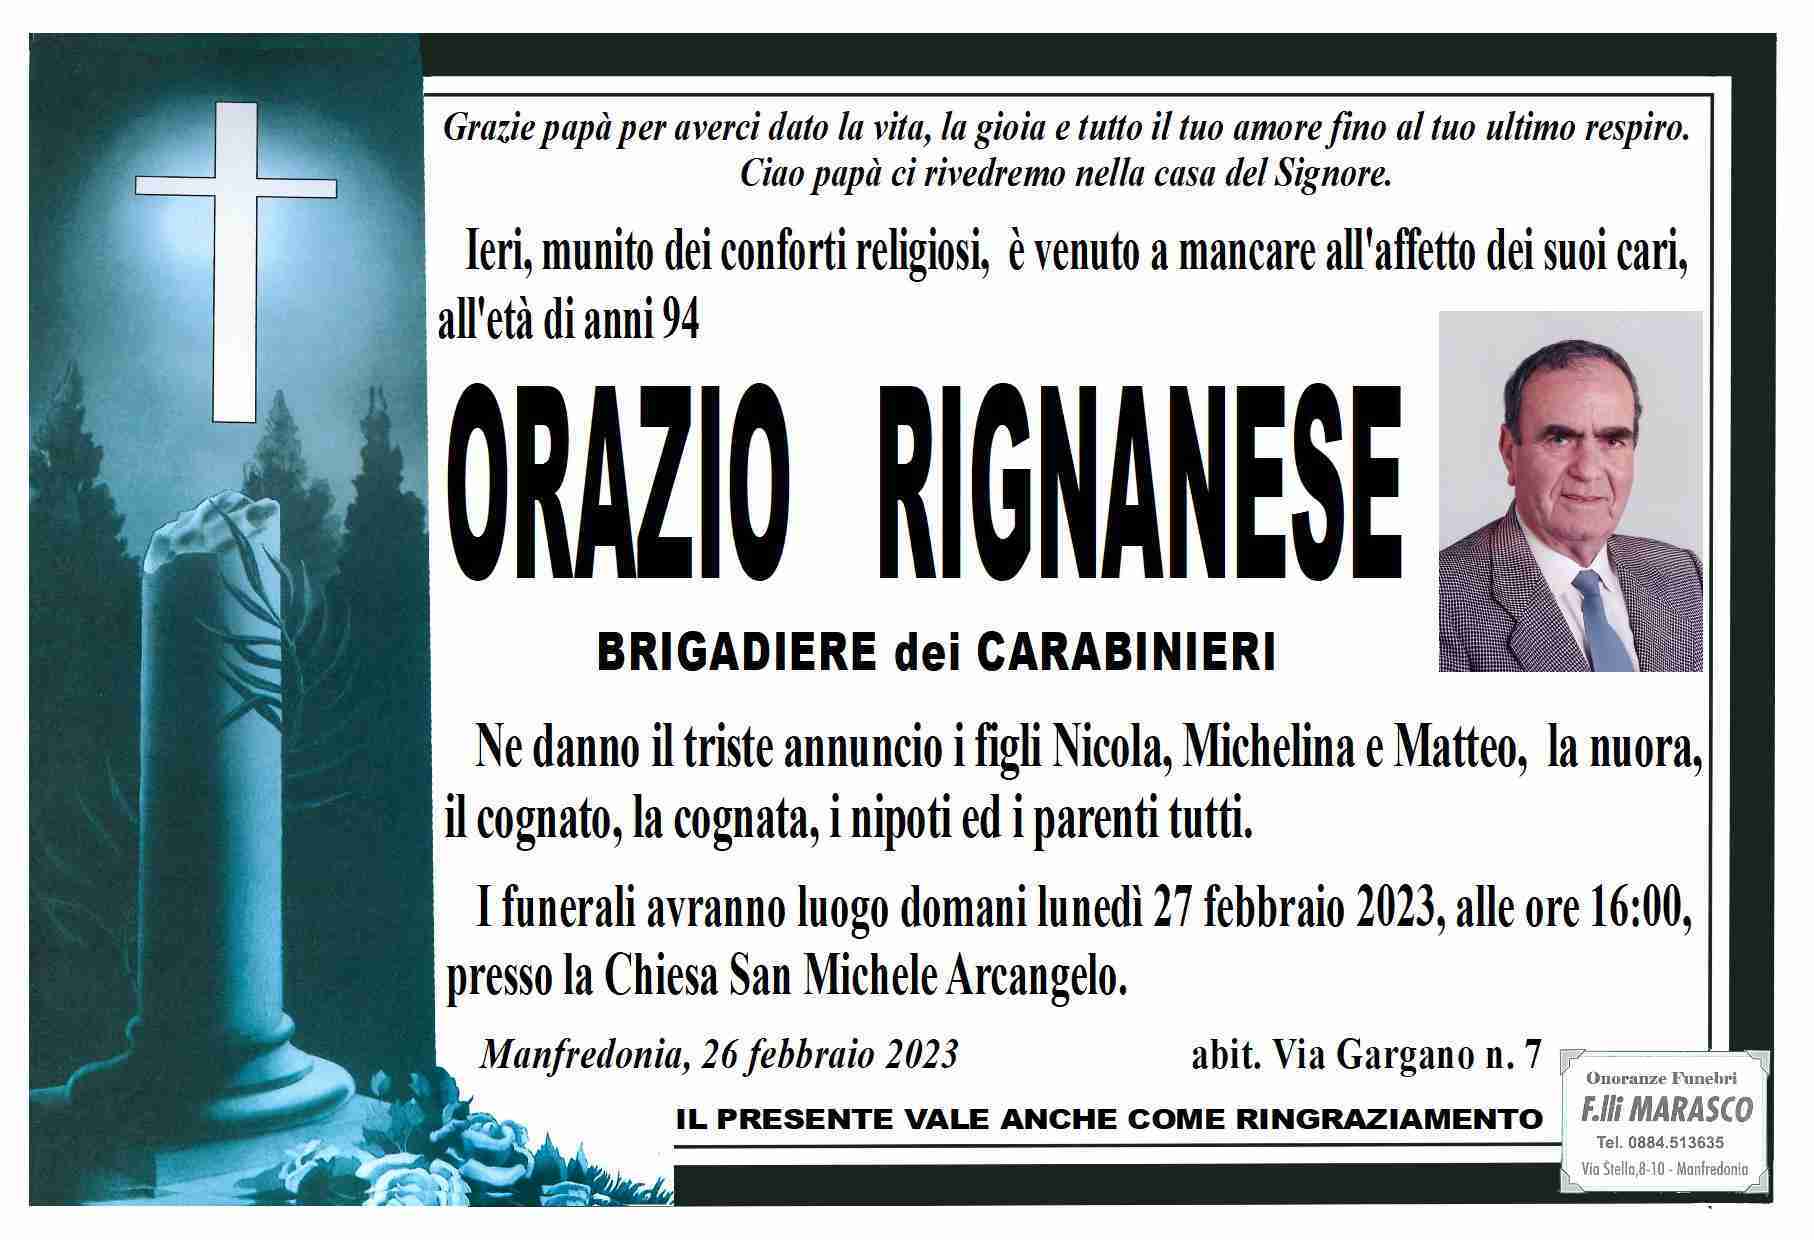 Orazio Rignanese